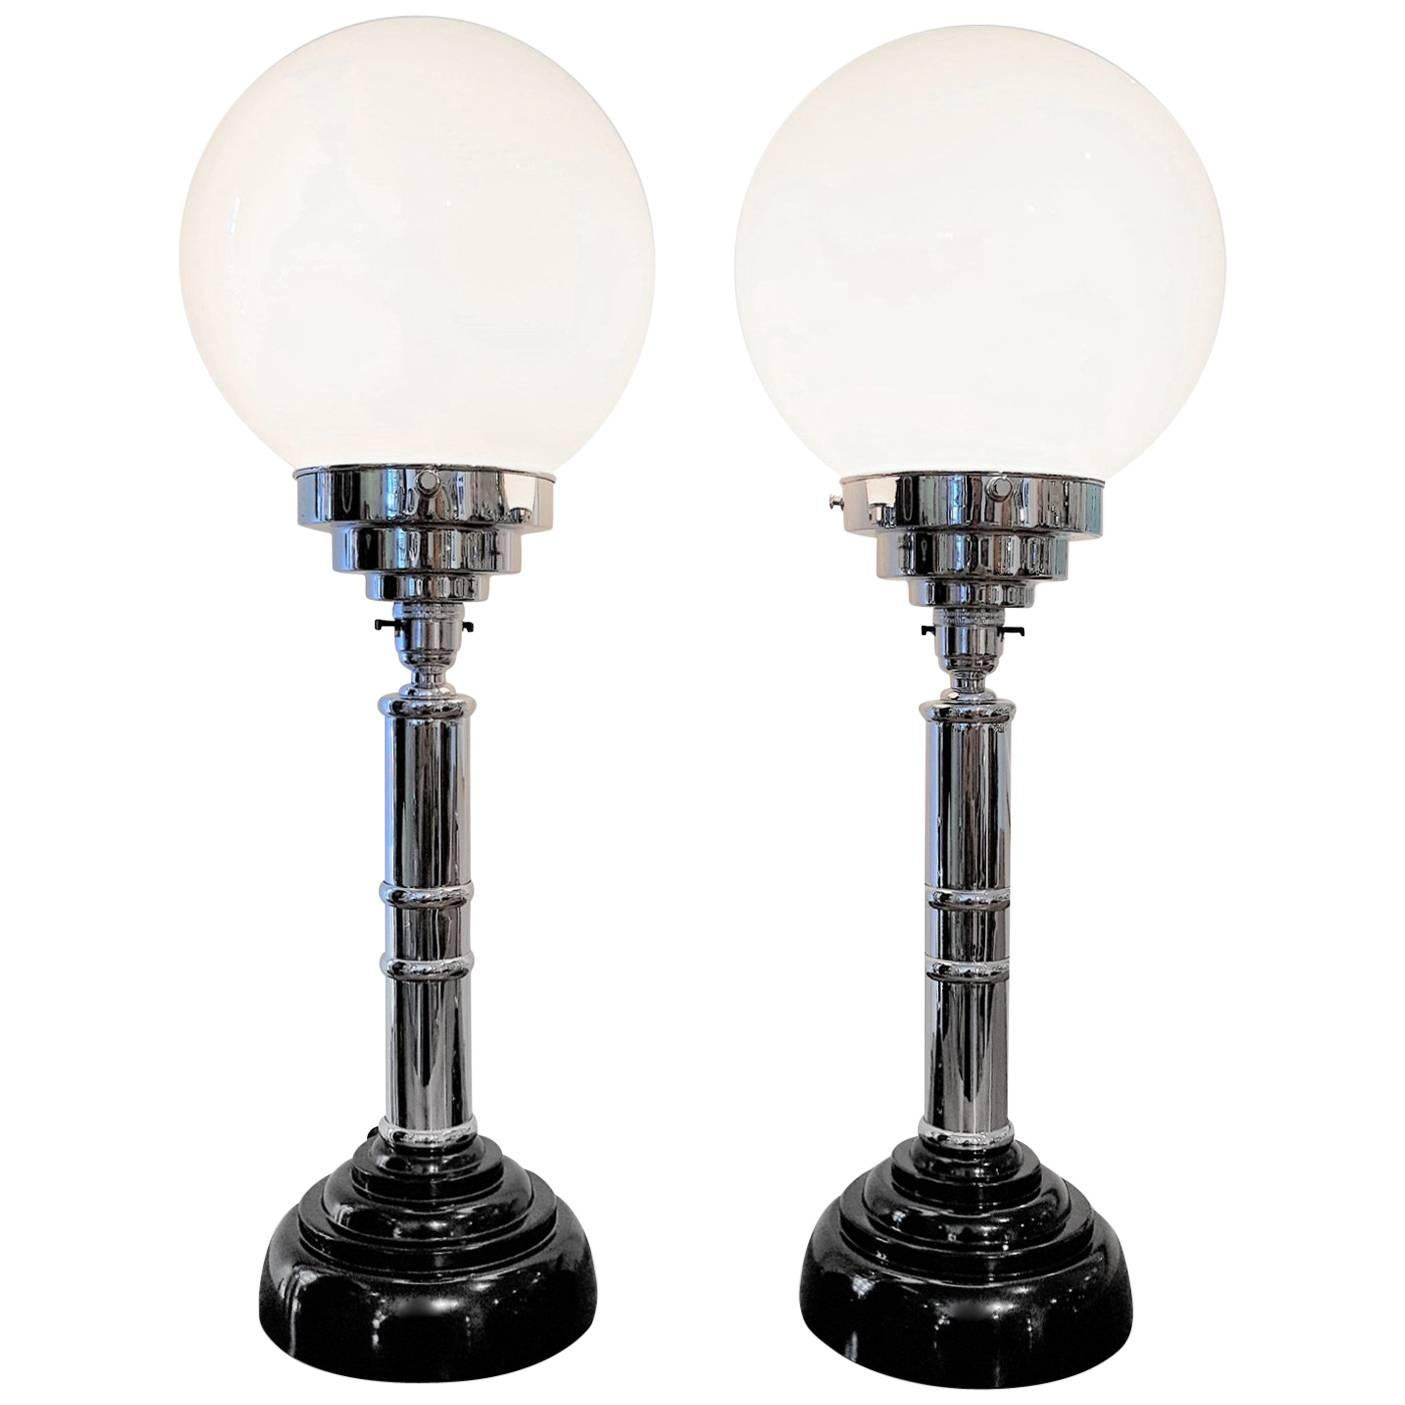 Art Deco Pair of Original Globe Table Lamps with Bakelite